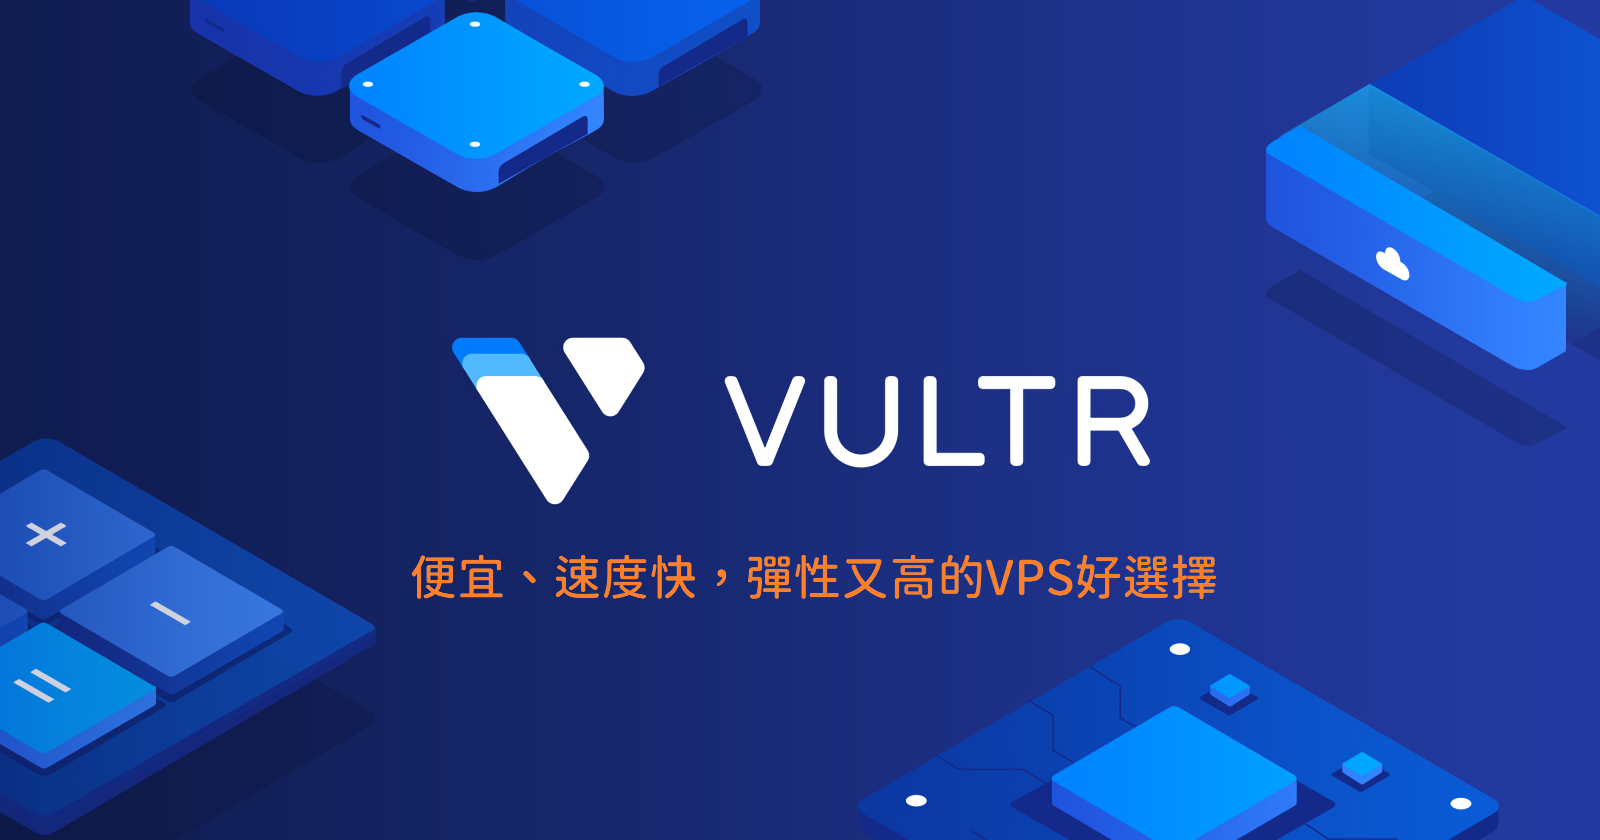 vultr - Vultr VPS 使用心得、100美金試用評價與一鍵架設Wordpress詳細教學